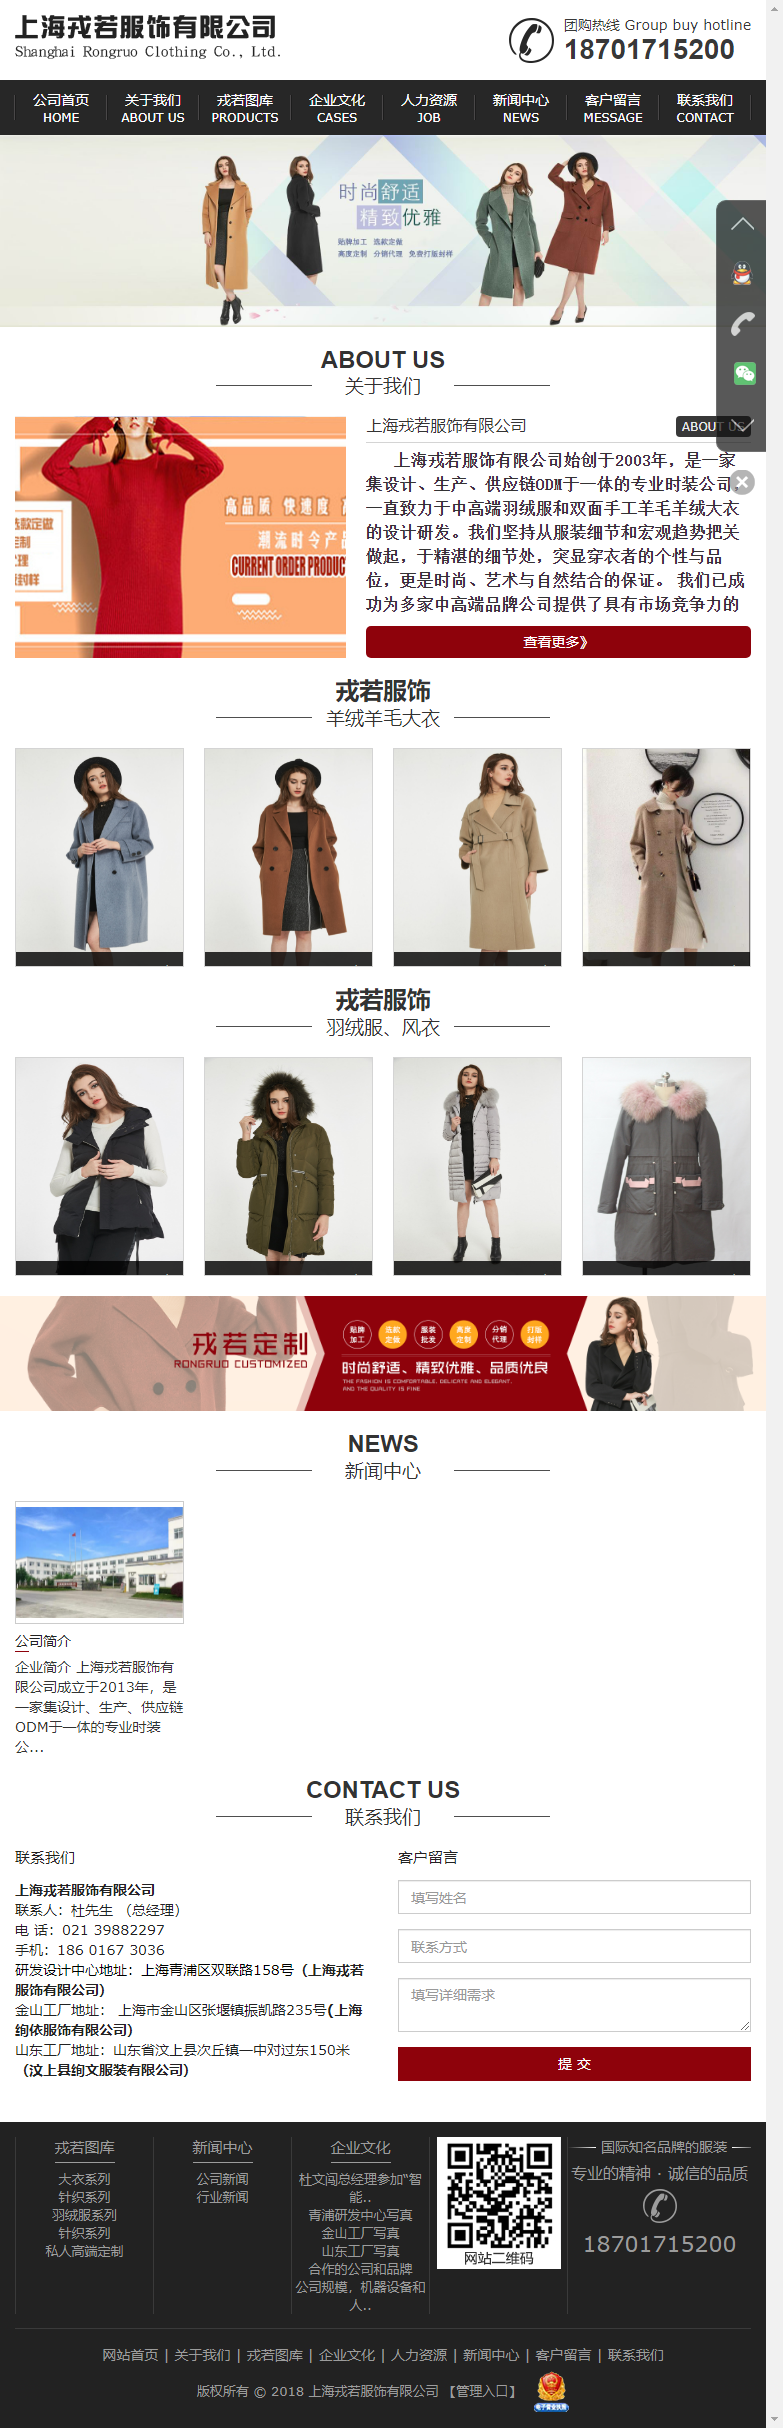 上海戎若服饰有限公司网站案例